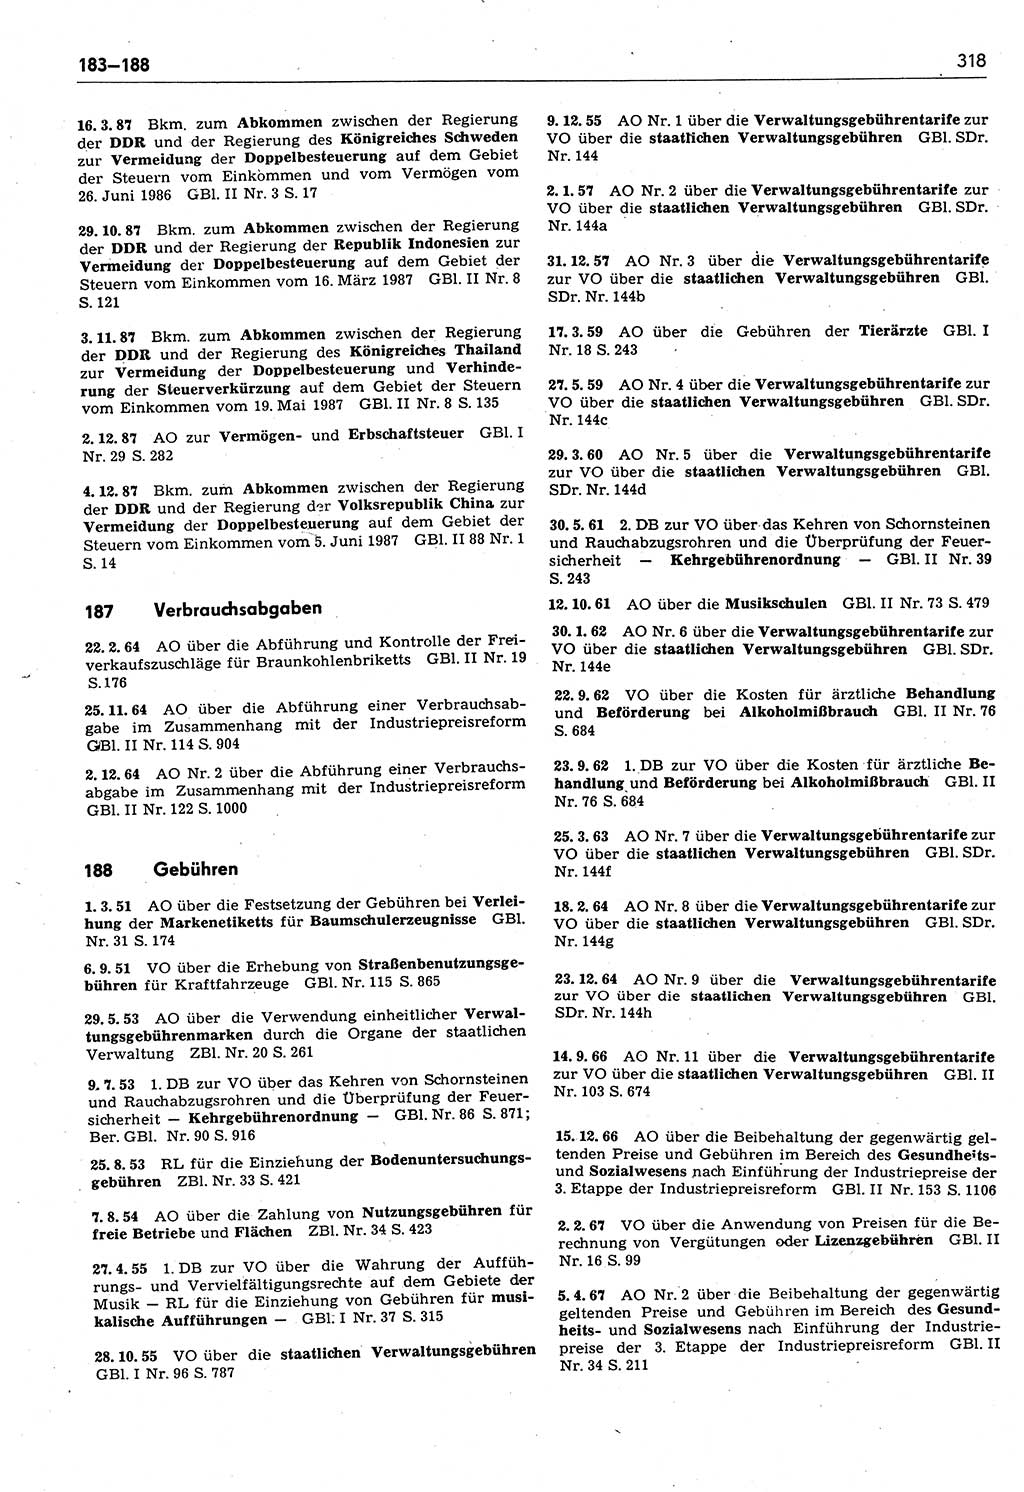 Das geltende Recht der Deutschen Demokratischen Republik (DDR) 1949-1988, Seite 318 (Gelt. R. DDR 1949-1988, S. 318)